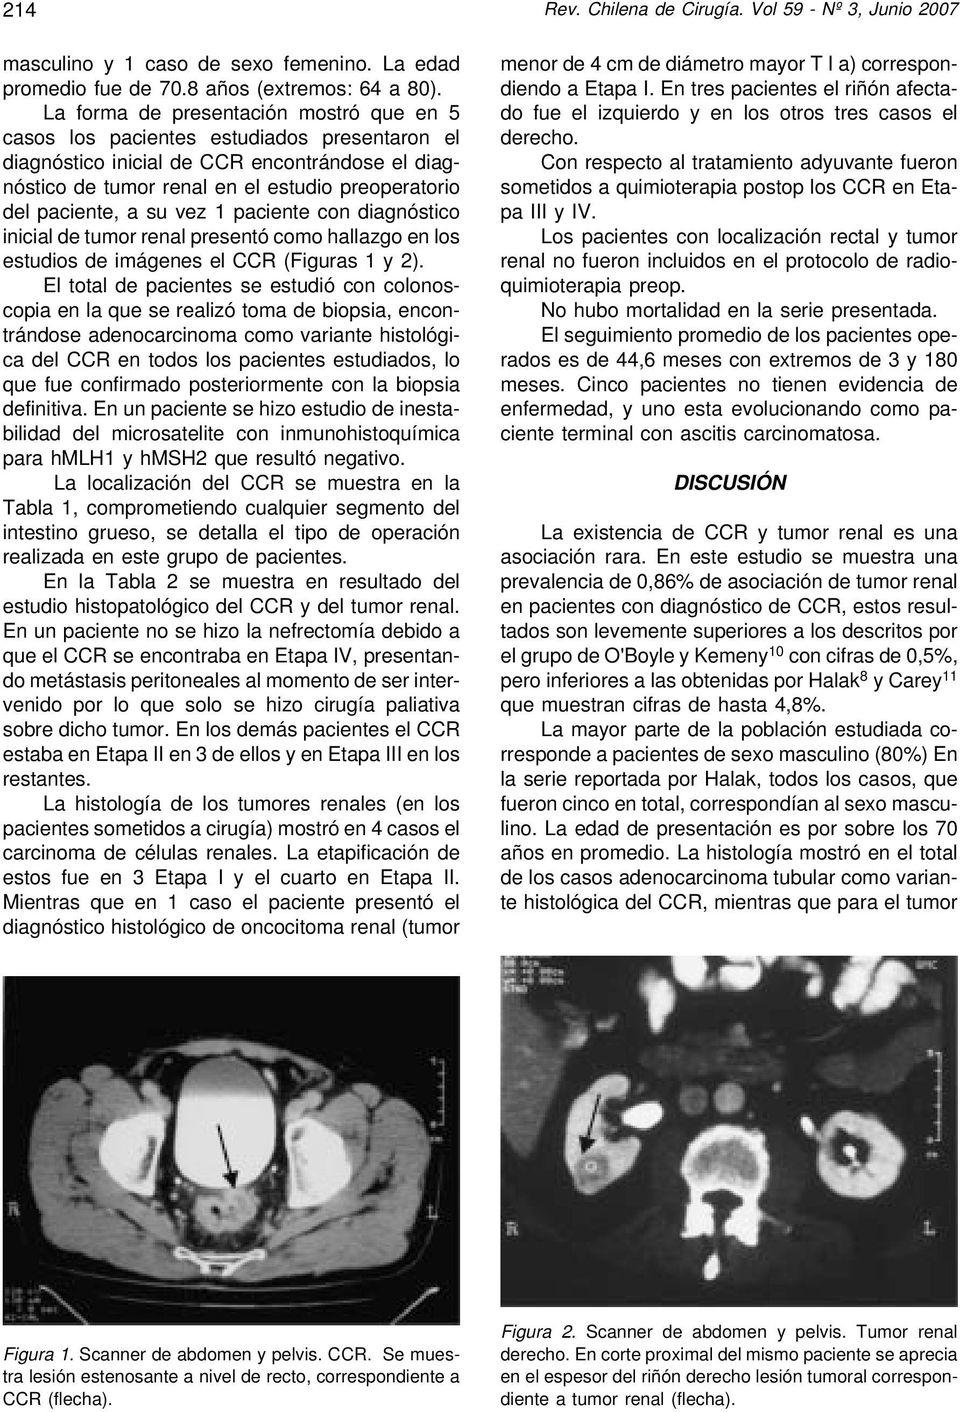 a su vez 1 paciente con diagnóstico inicial de tumor renal presentó como hallazgo en los estudios de imágenes el CCR (Figuras 1 y 2).